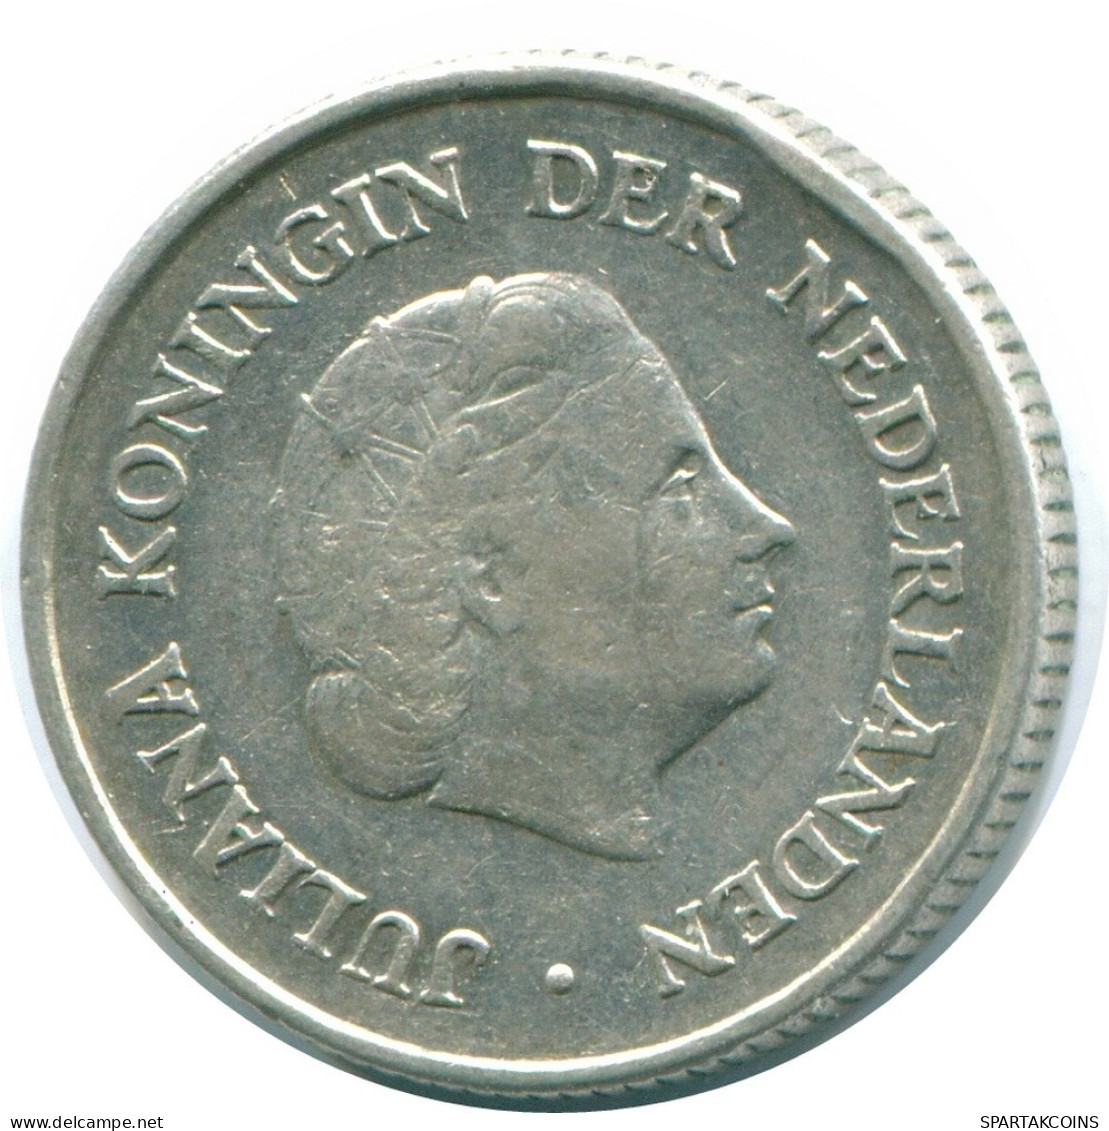 1/4 GULDEN 1962 NIEDERLÄNDISCHE ANTILLEN SILBER Koloniale Münze #NL11106.4.D.A - Nederlandse Antillen